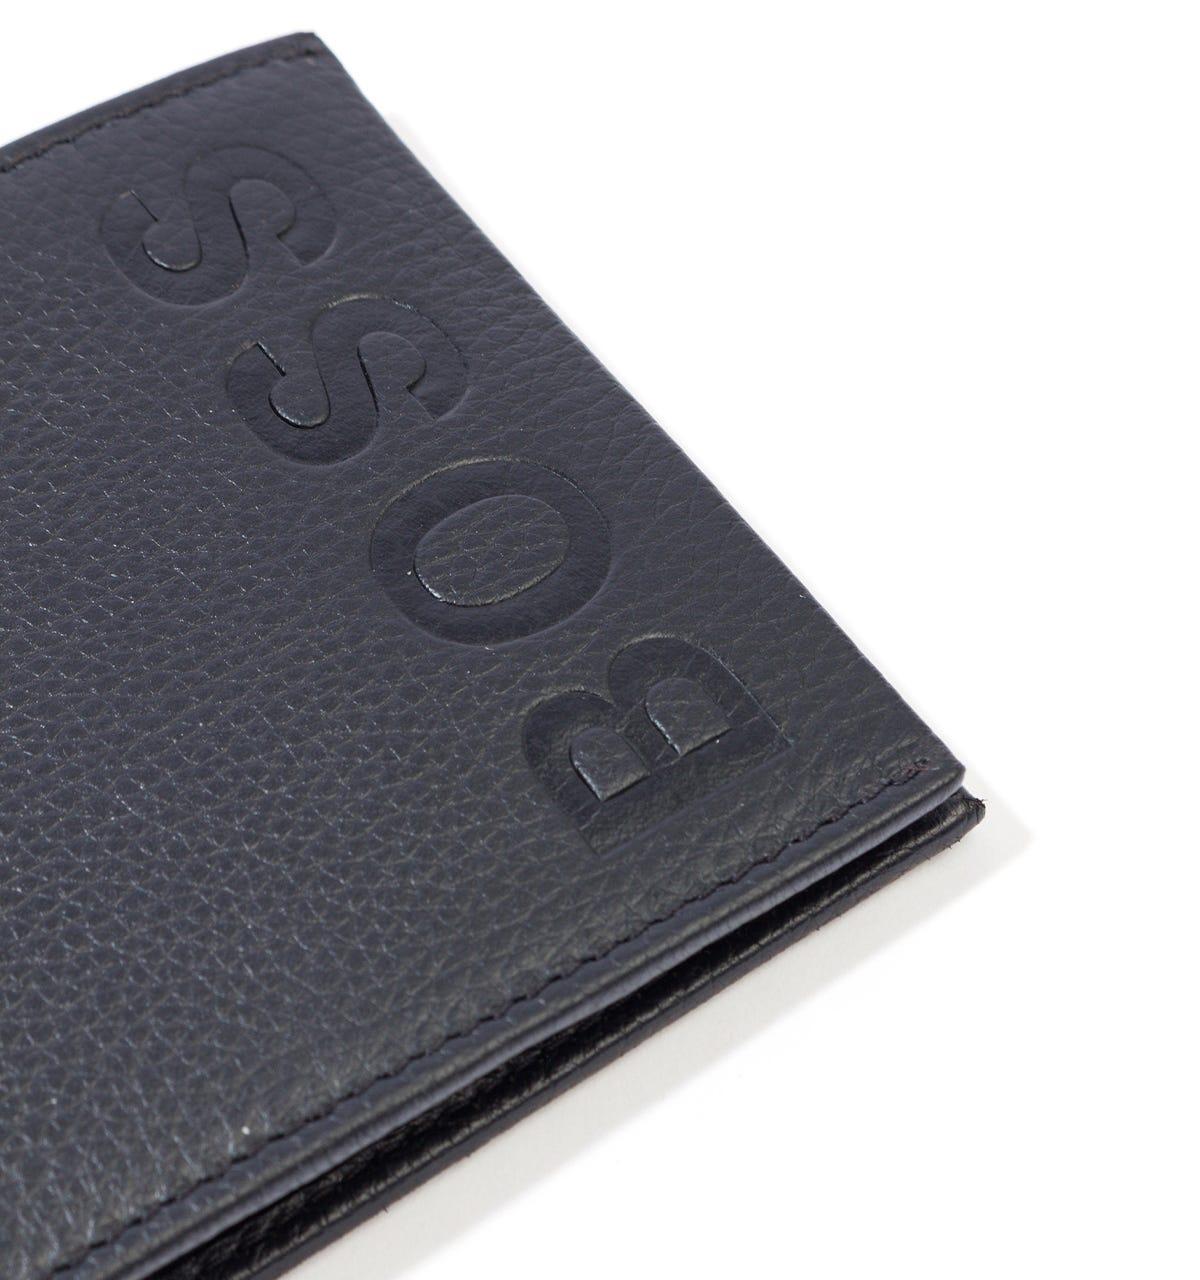 Soft Grain Leather.Card Holder Wallet Gift Designer Hugo Boss Bardio Men Black 